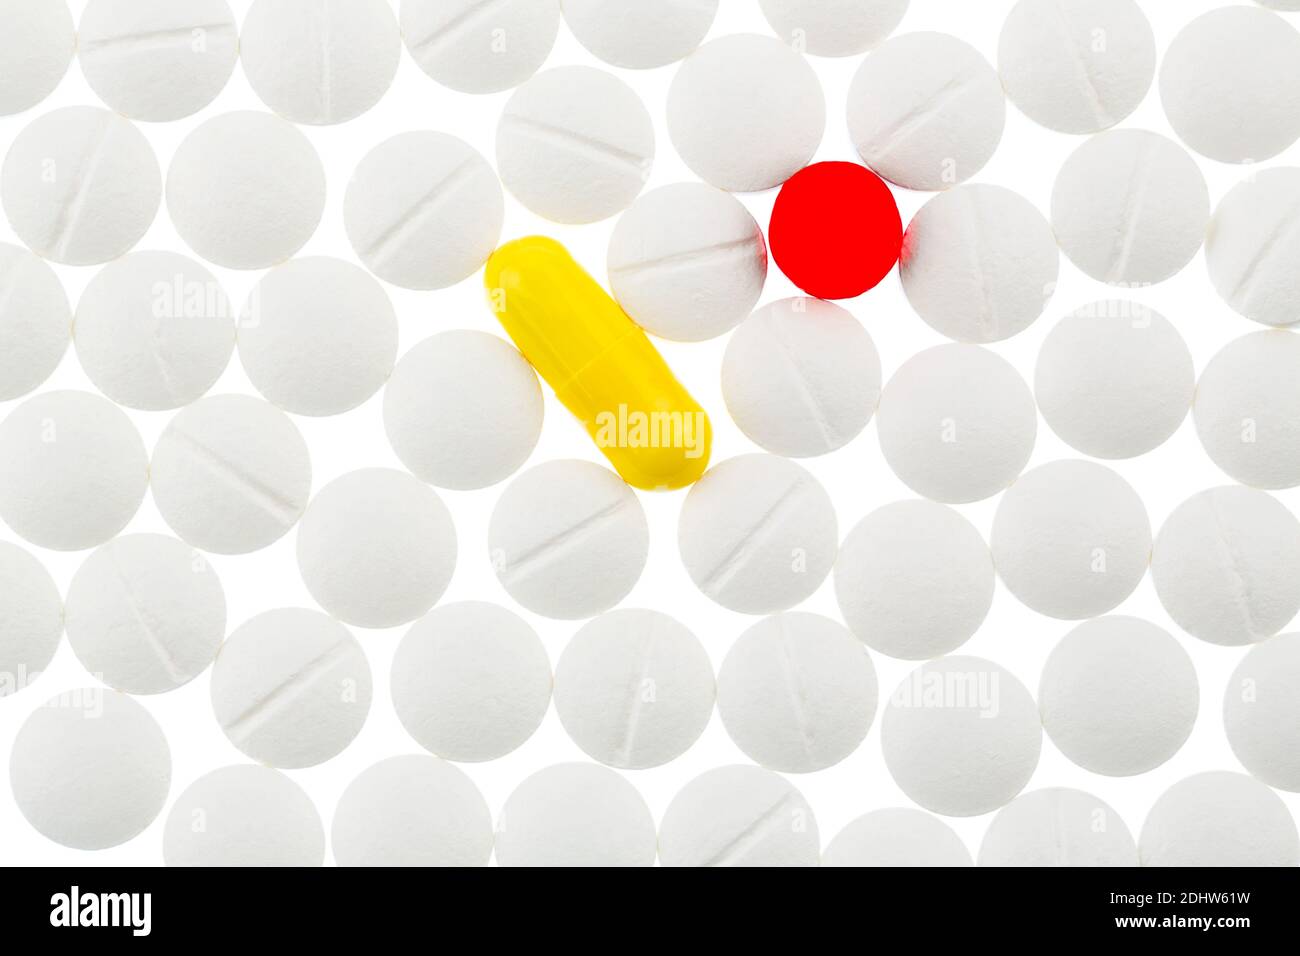 Verschiedene Tabletten, Kosten, Geld, Euro, Gesundheitswesen, Krankenhasse, Medizin, Pillen, weisse, eine gelbe, eine rote, Stock Photo